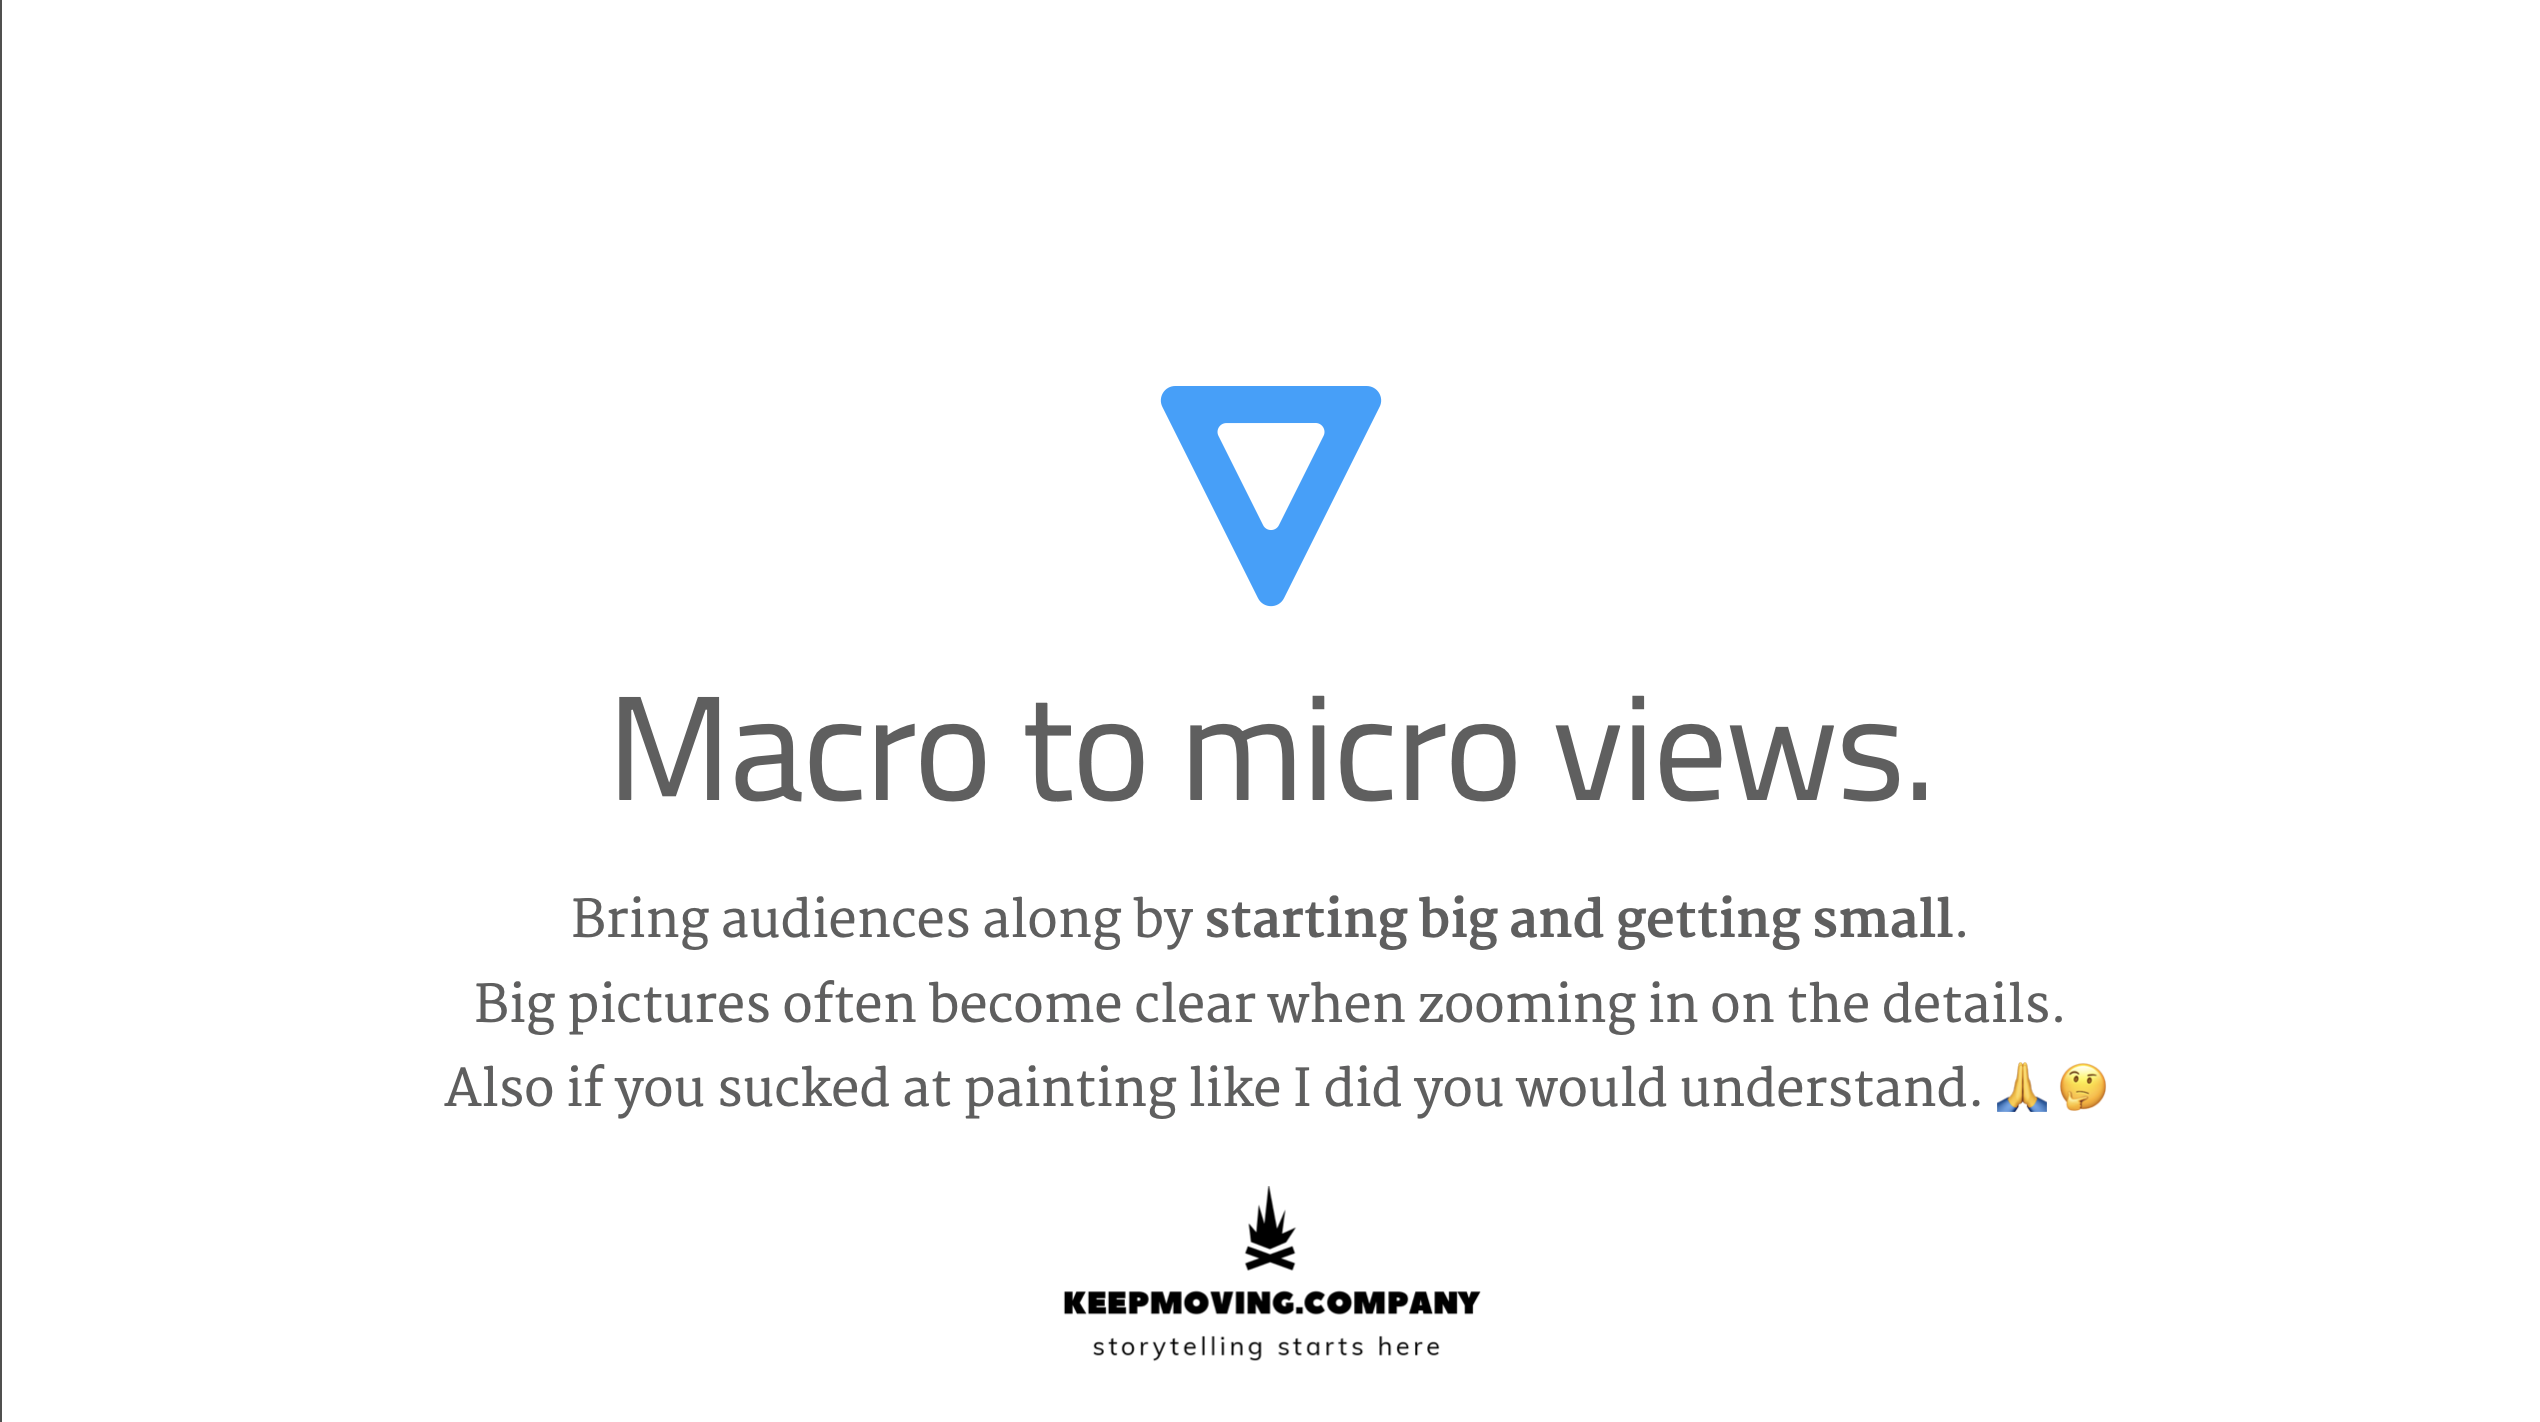 Macro to micro views